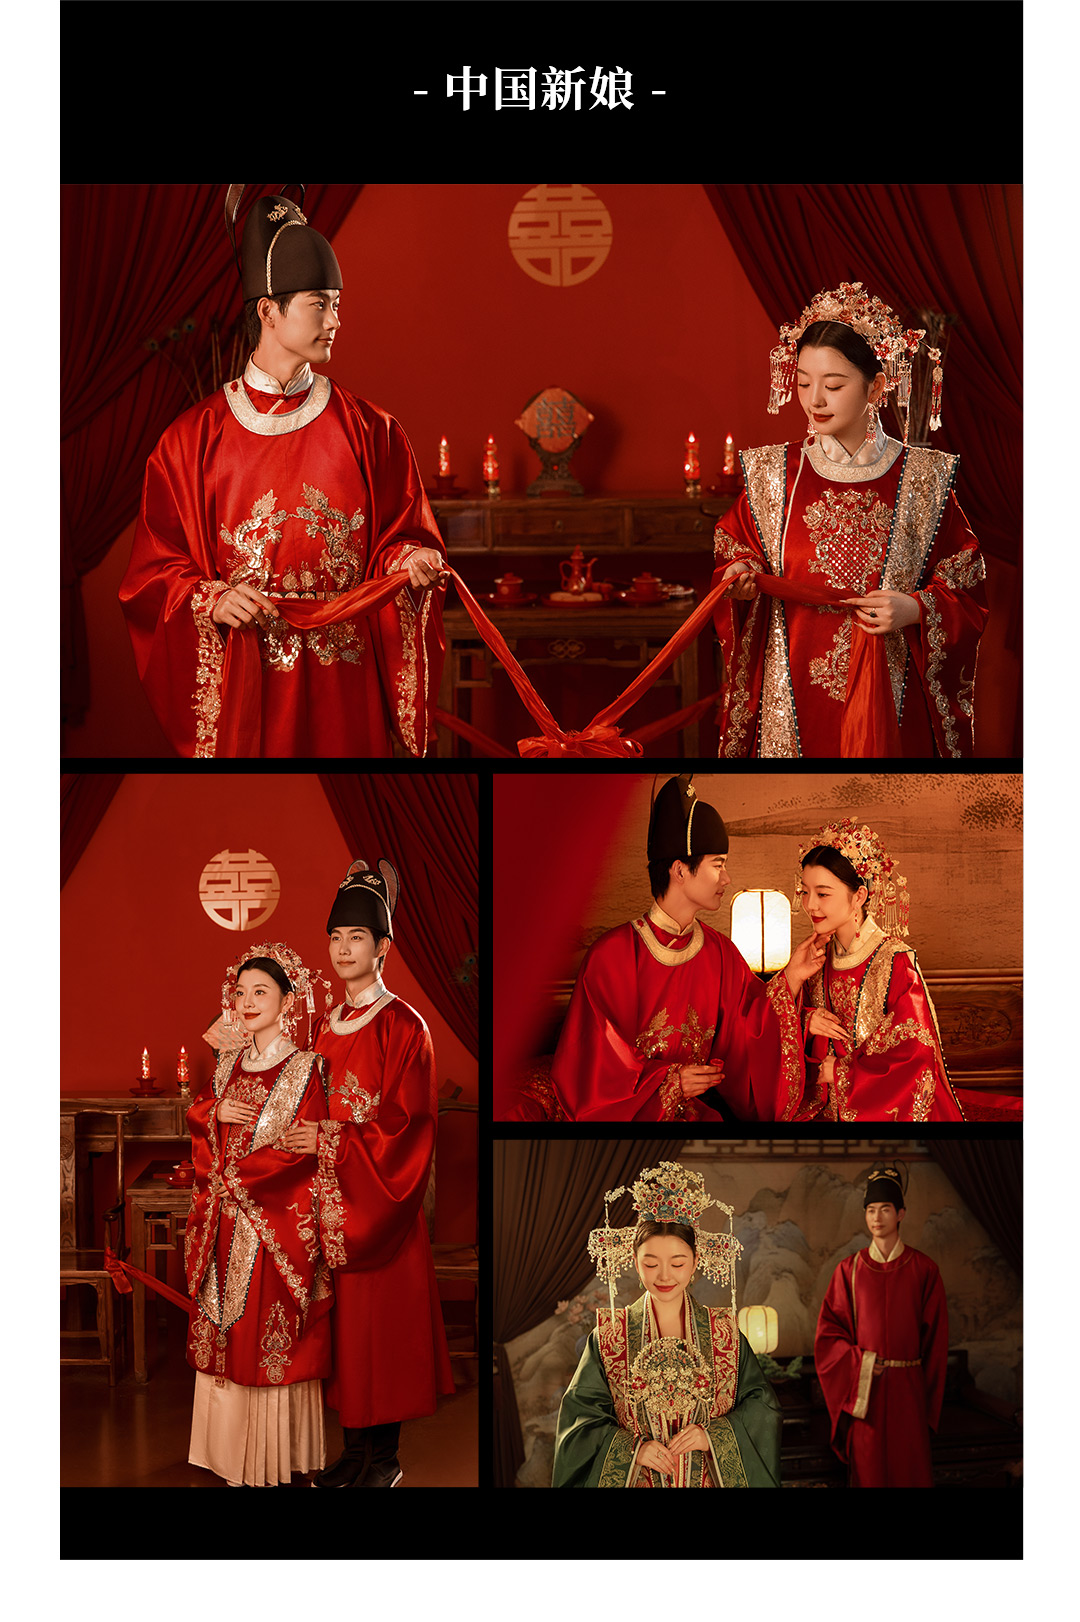 【限时特惠】中国新娘|城市潮拍系列|韩式婚纱照